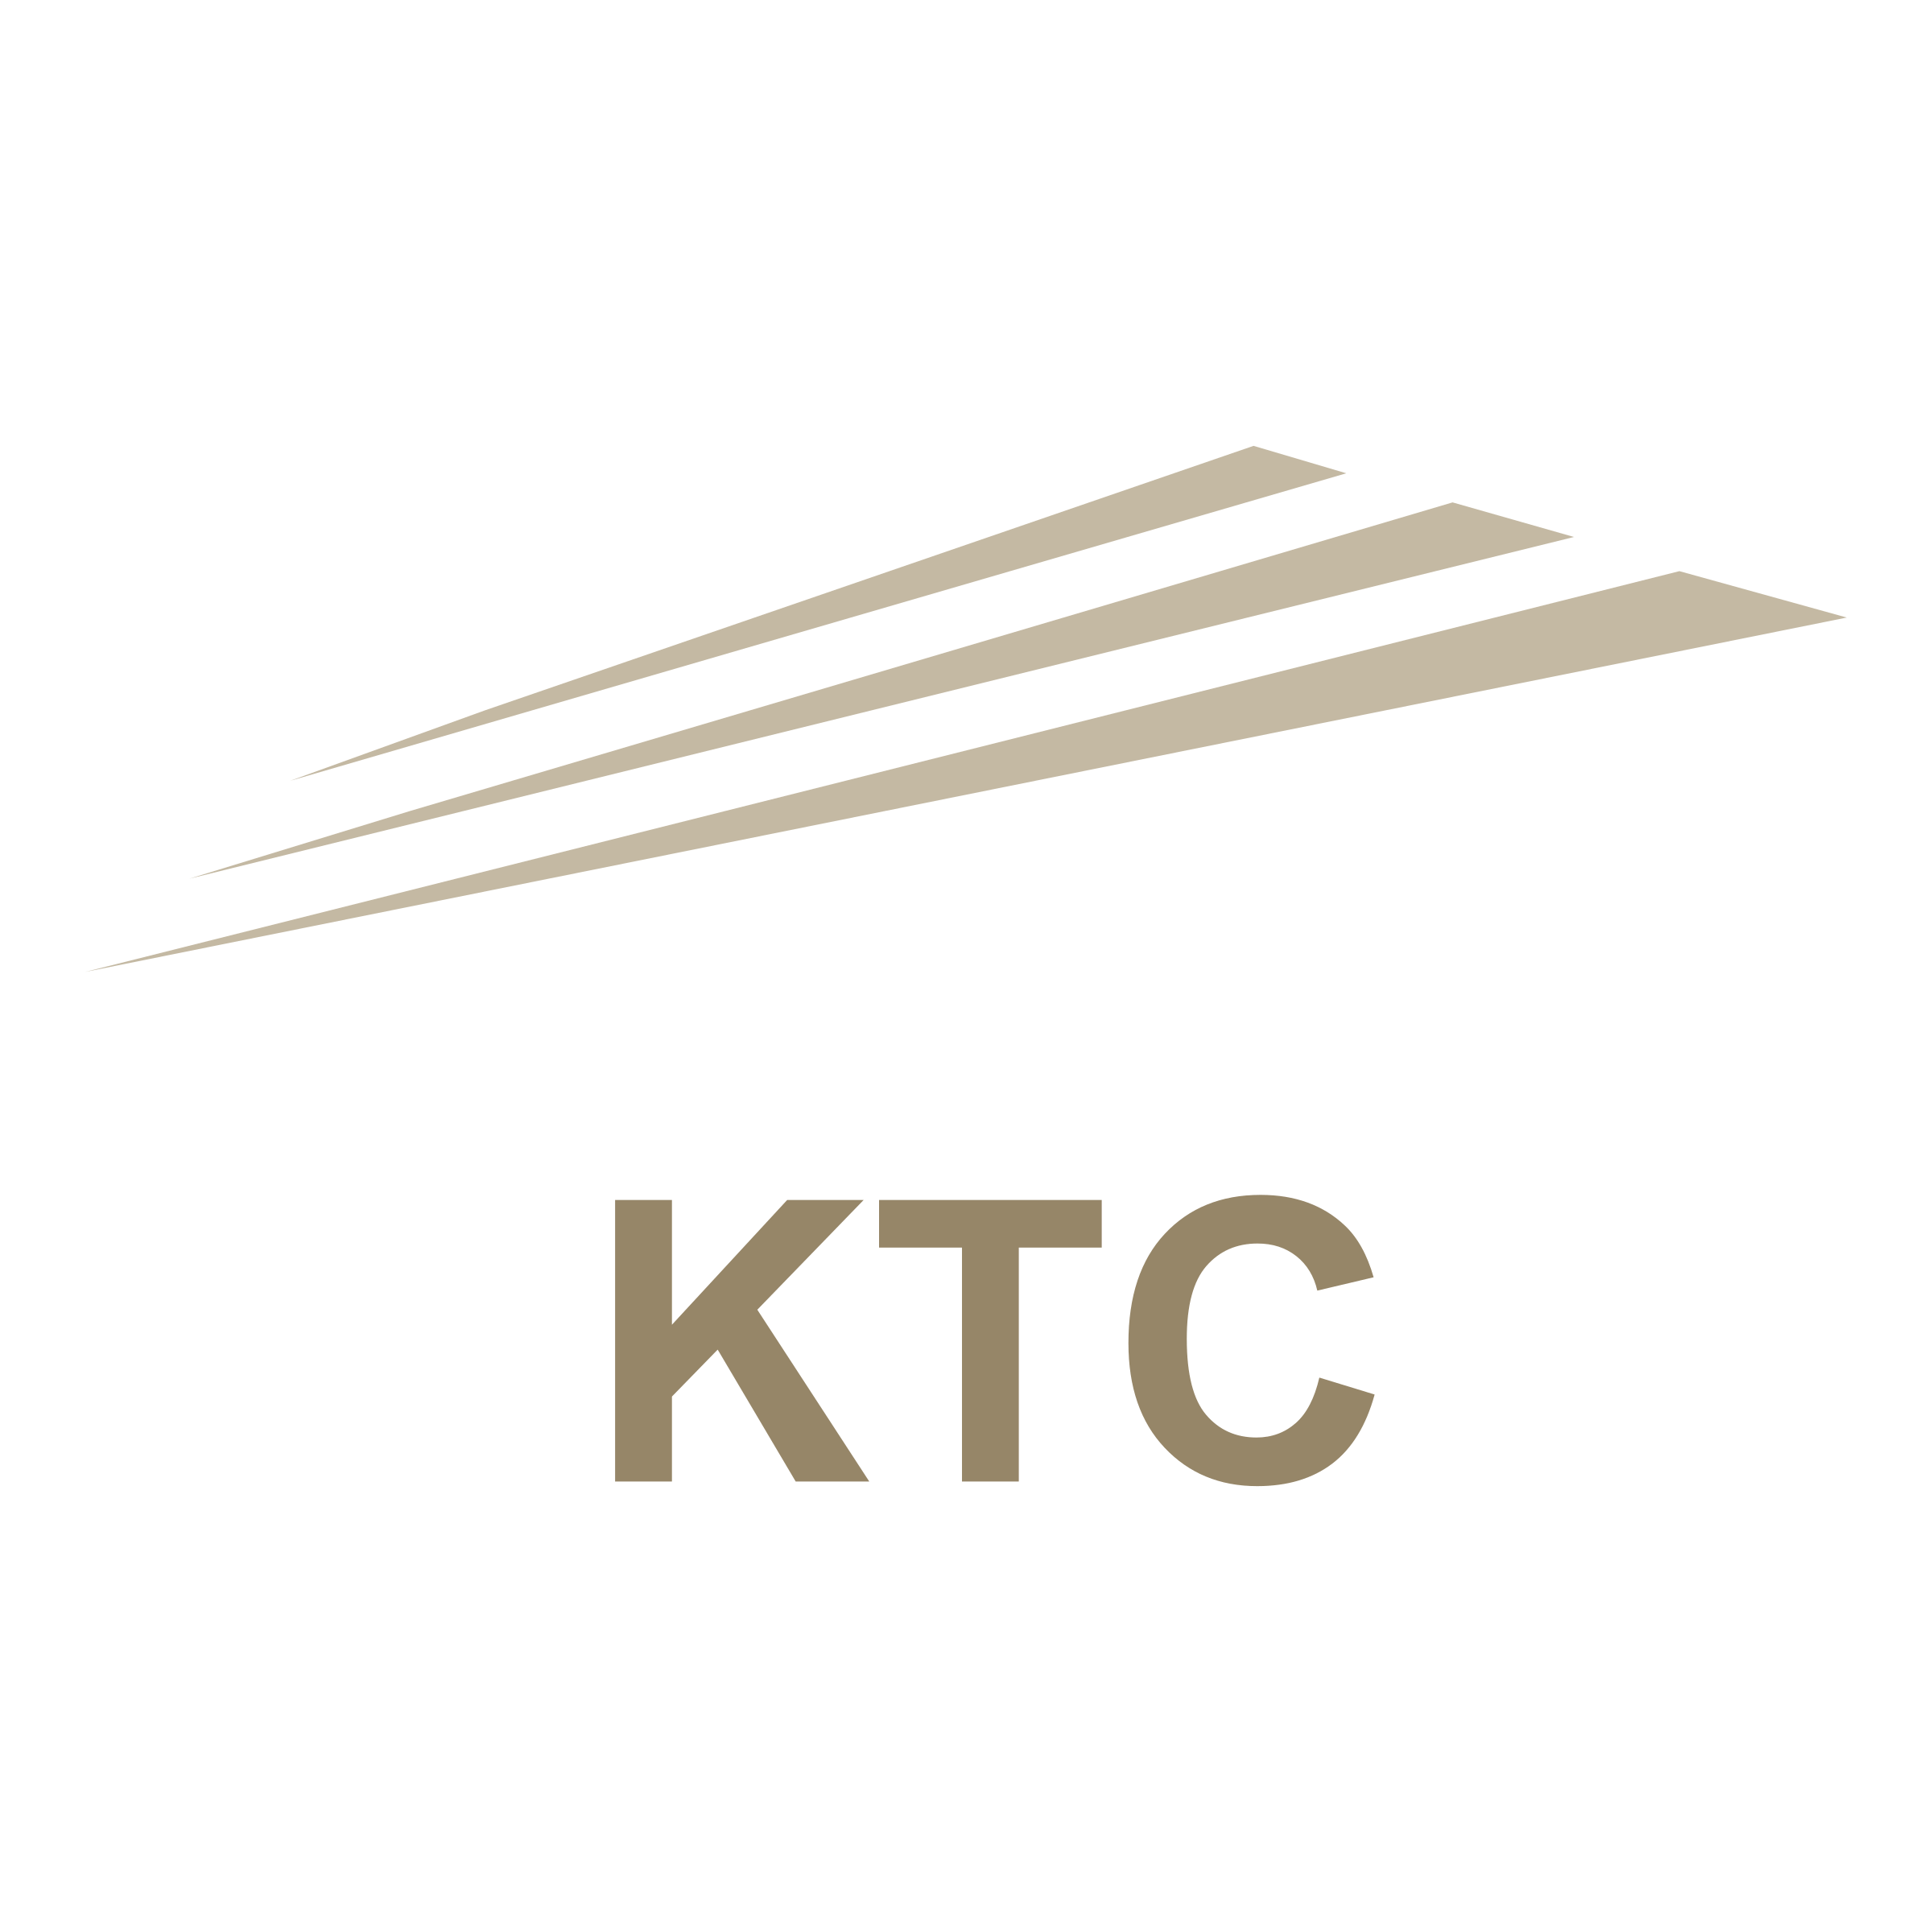 KTC Logo - KTC Logo PNG Transparent & SVG Vector